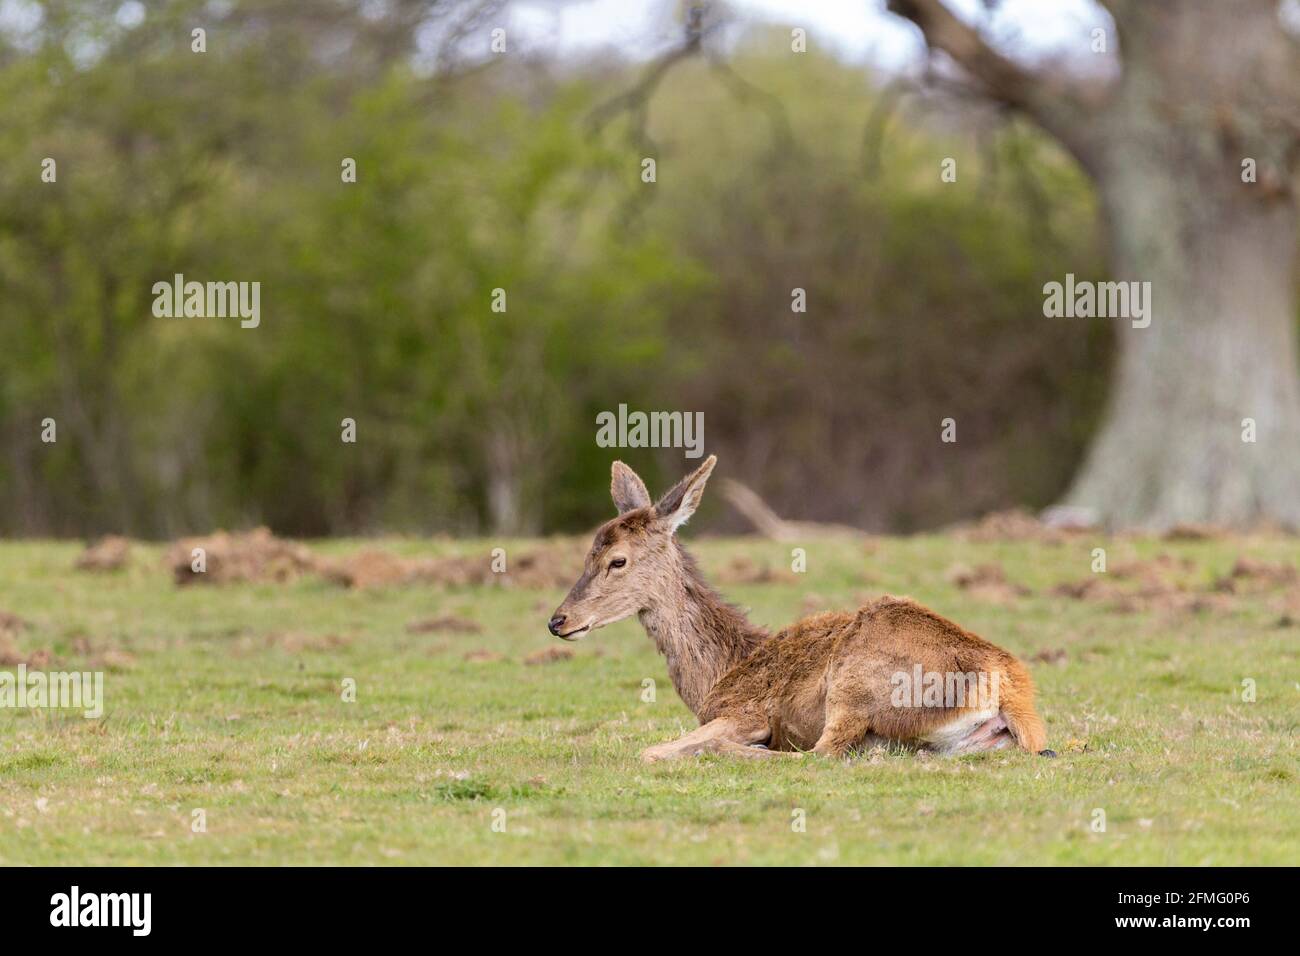 Fauve de cerfs rouges sur l'herbe de prairie ouverte non loin de la mère à proximité. Manteau brun rouge (pas de taches comme chez le nourrisson) long cou longues oreilles pointues queue courte Banque D'Images